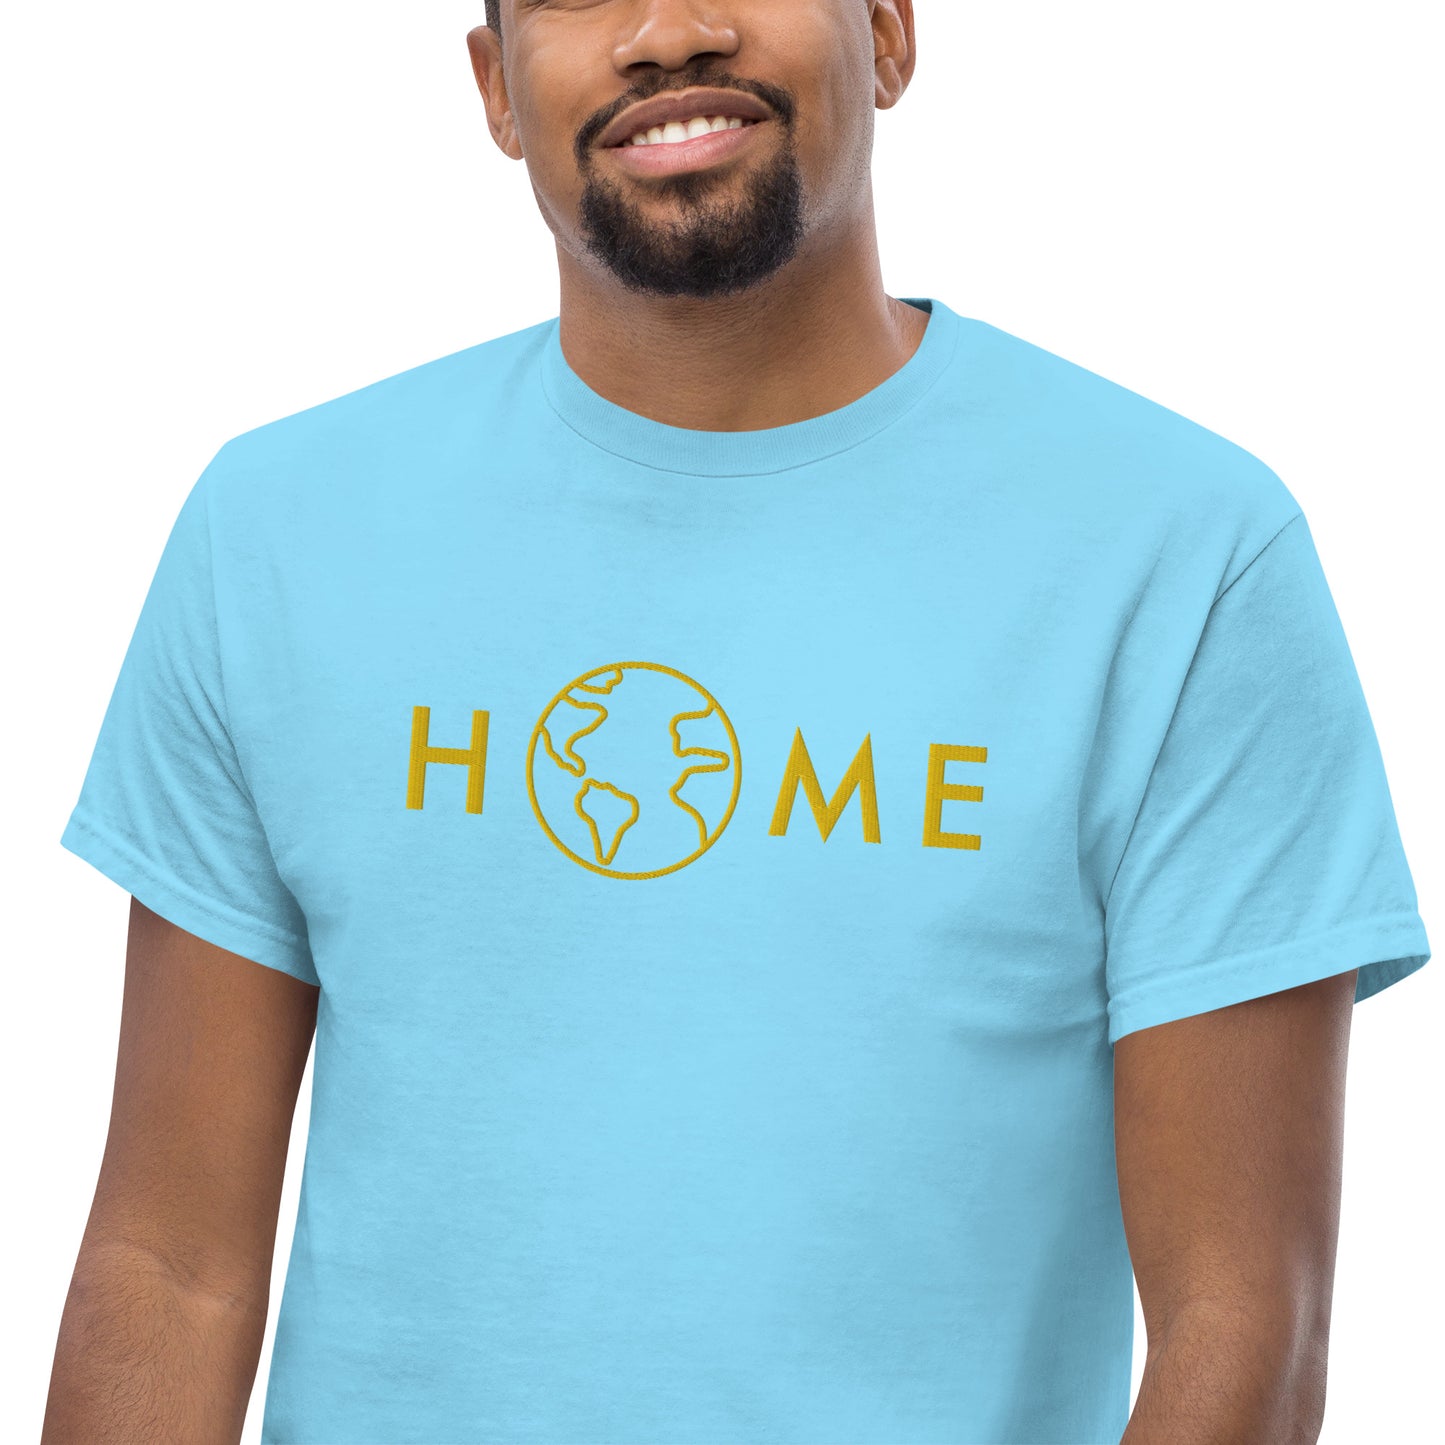 "Home" men's t-shirt